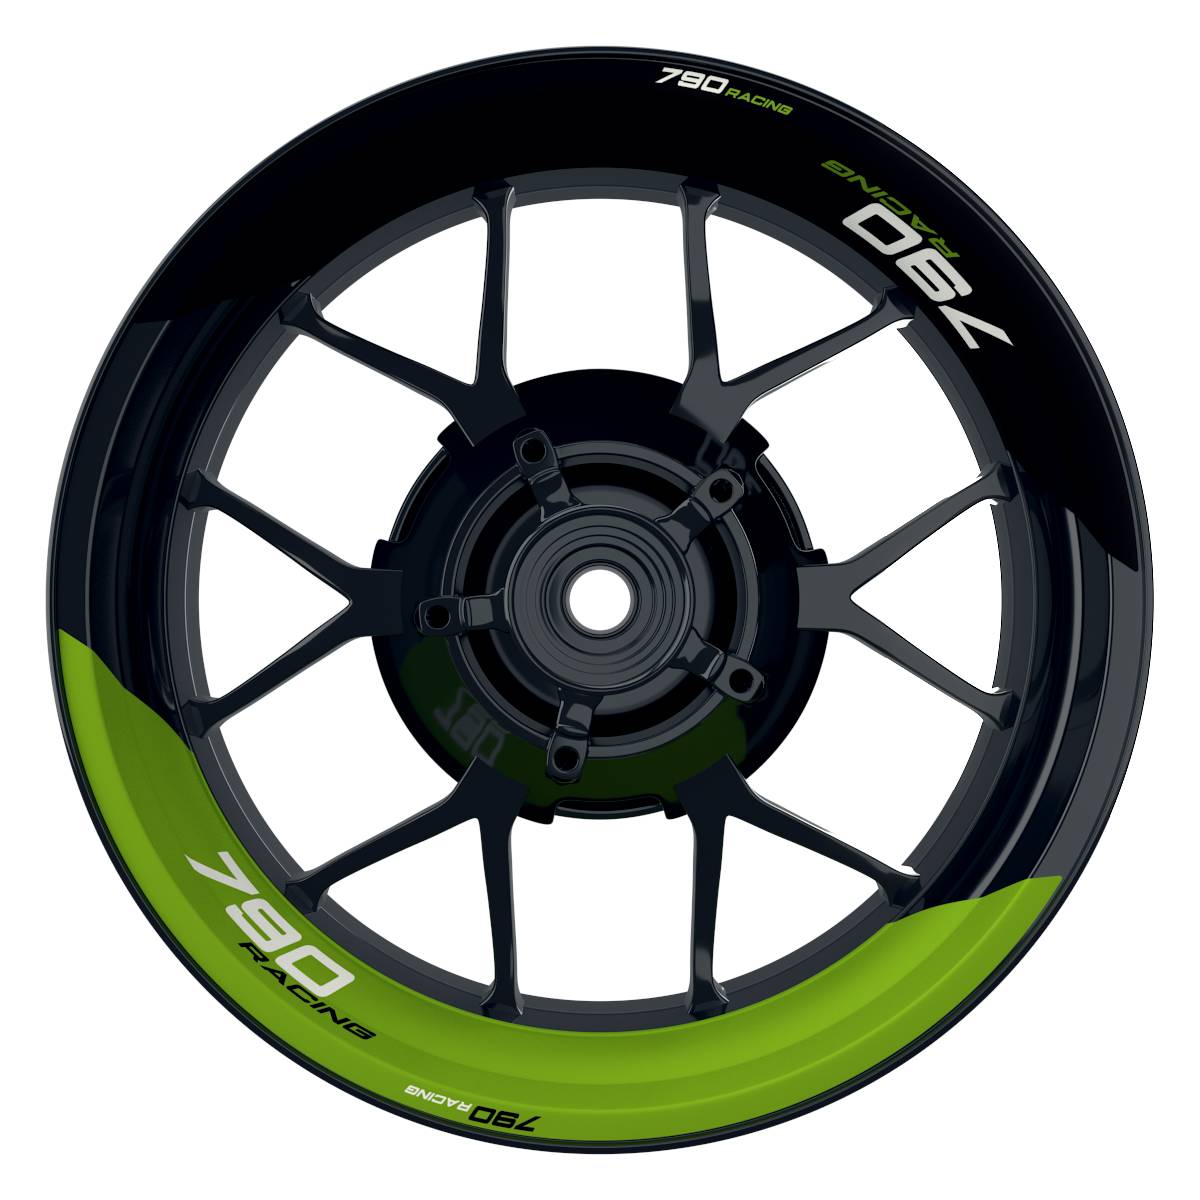 KTM Racing 790 halb halb schwarz gruen Frontansicht